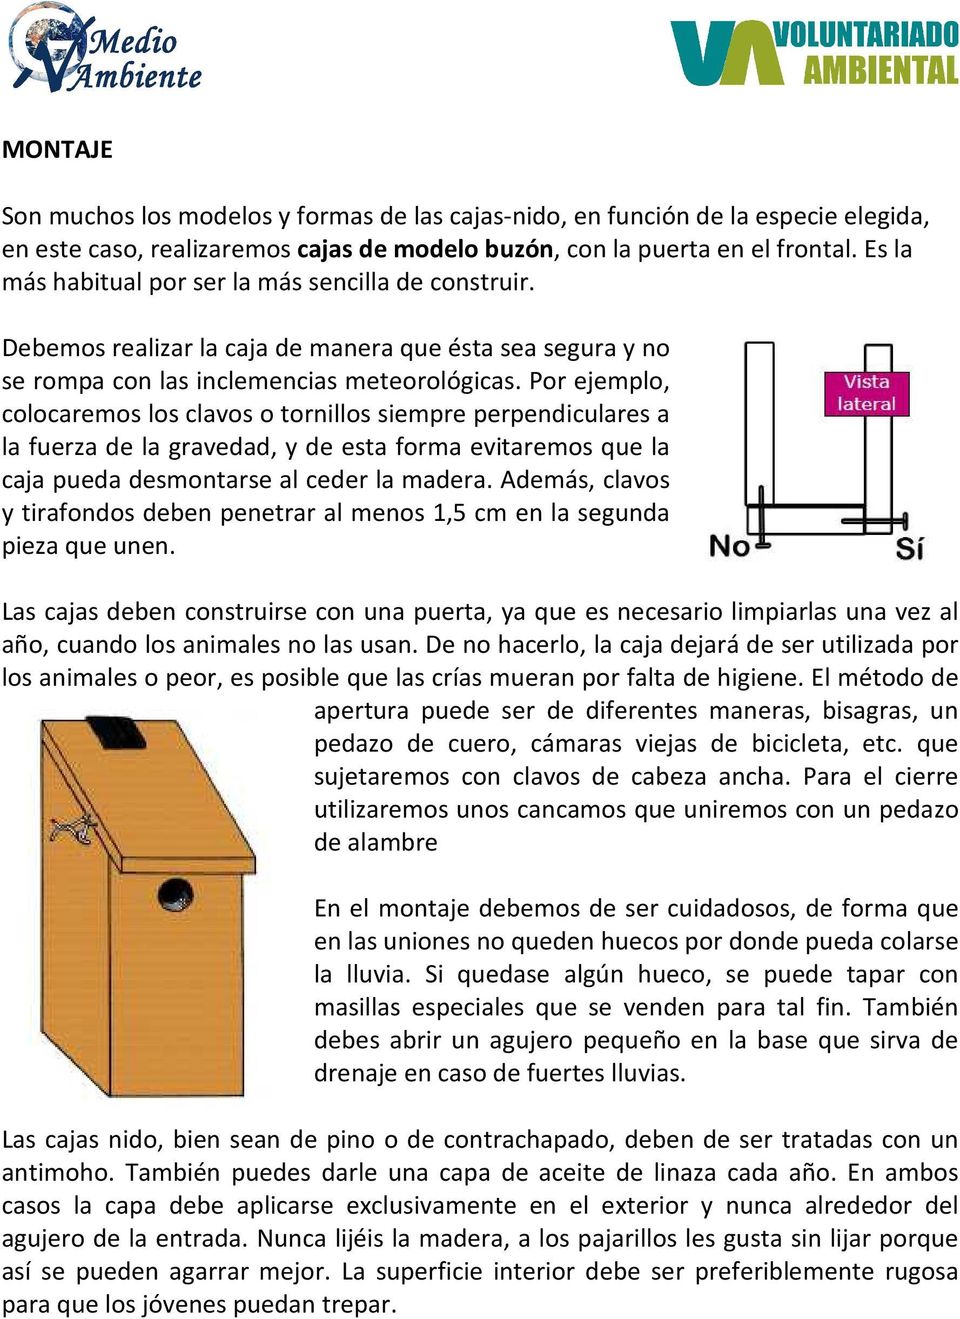 Por ejemplo, colocaremos los clavos o tornillos siempre perpendiculares a la fuerza de la gravedad, y de esta forma evitaremos que la caja pueda desmontarse al ceder la madera.